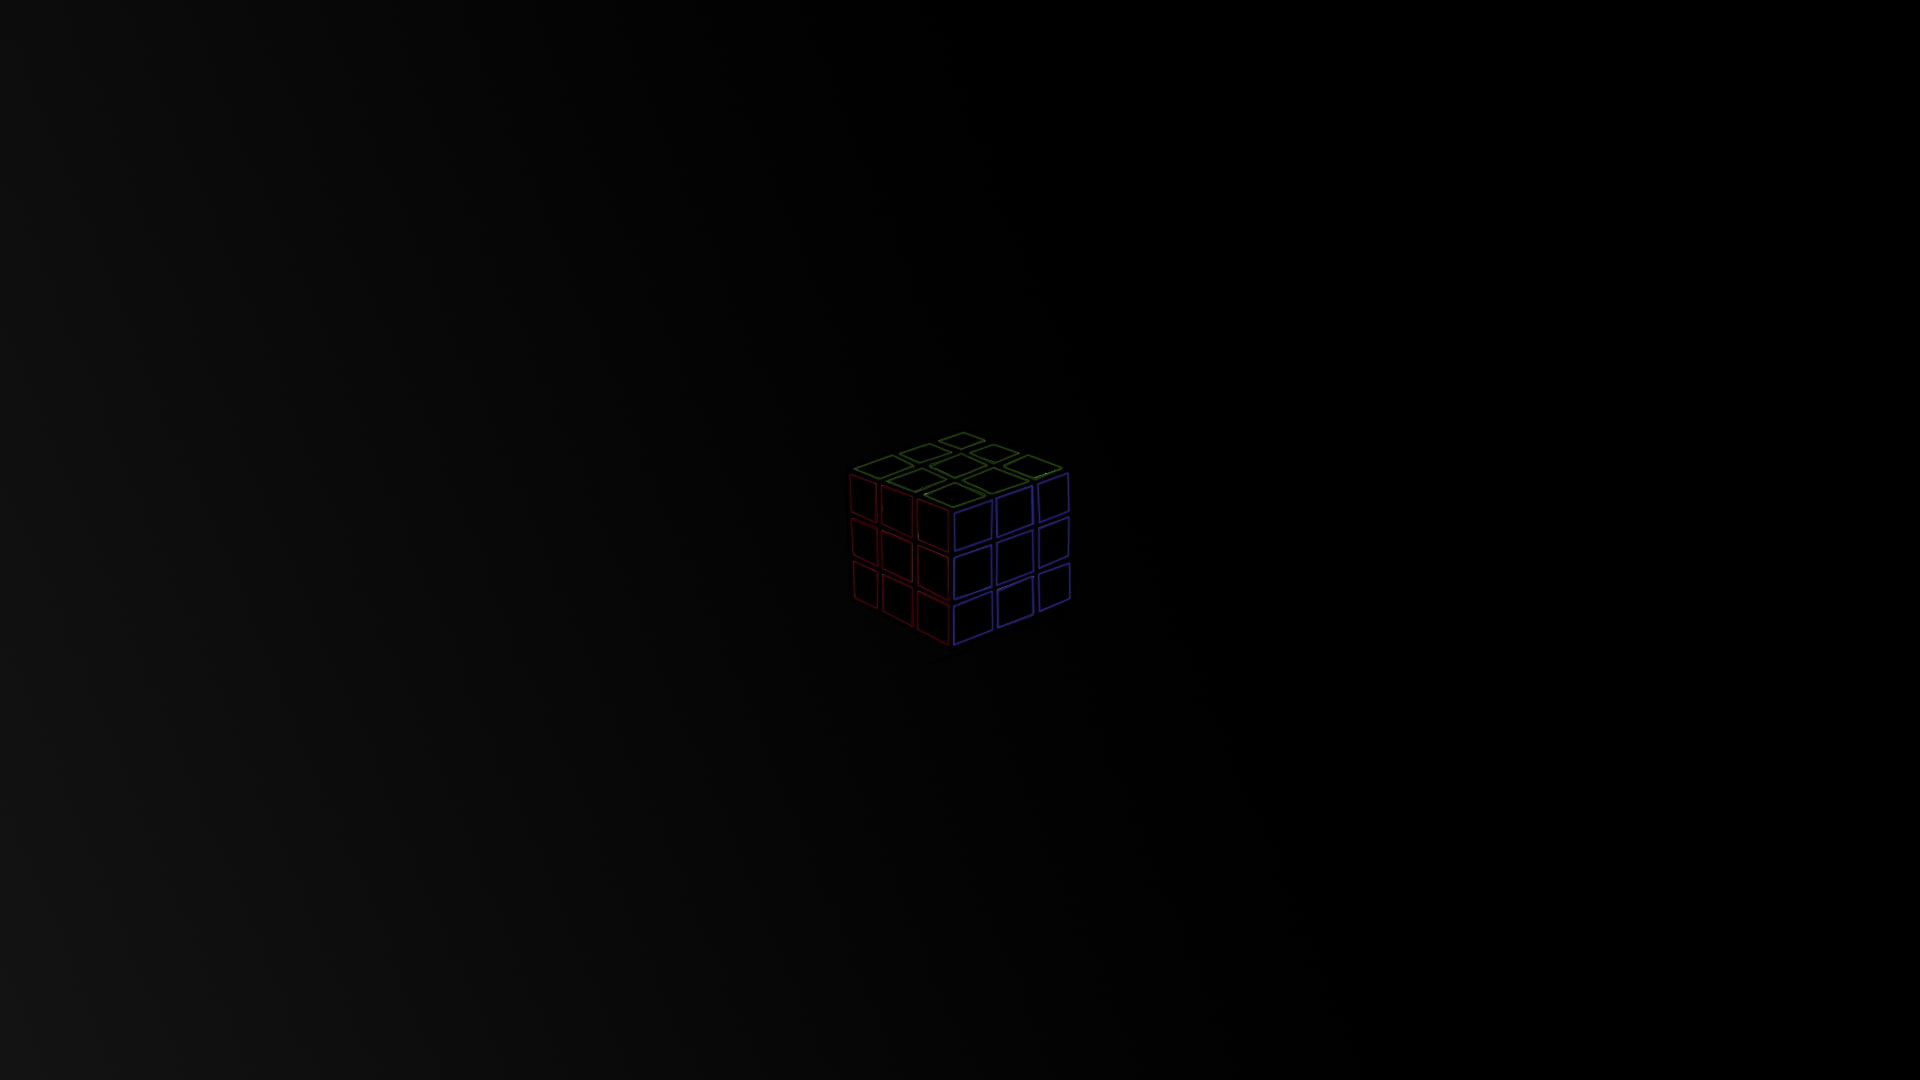 cube, Photoshop, minimalism, black background